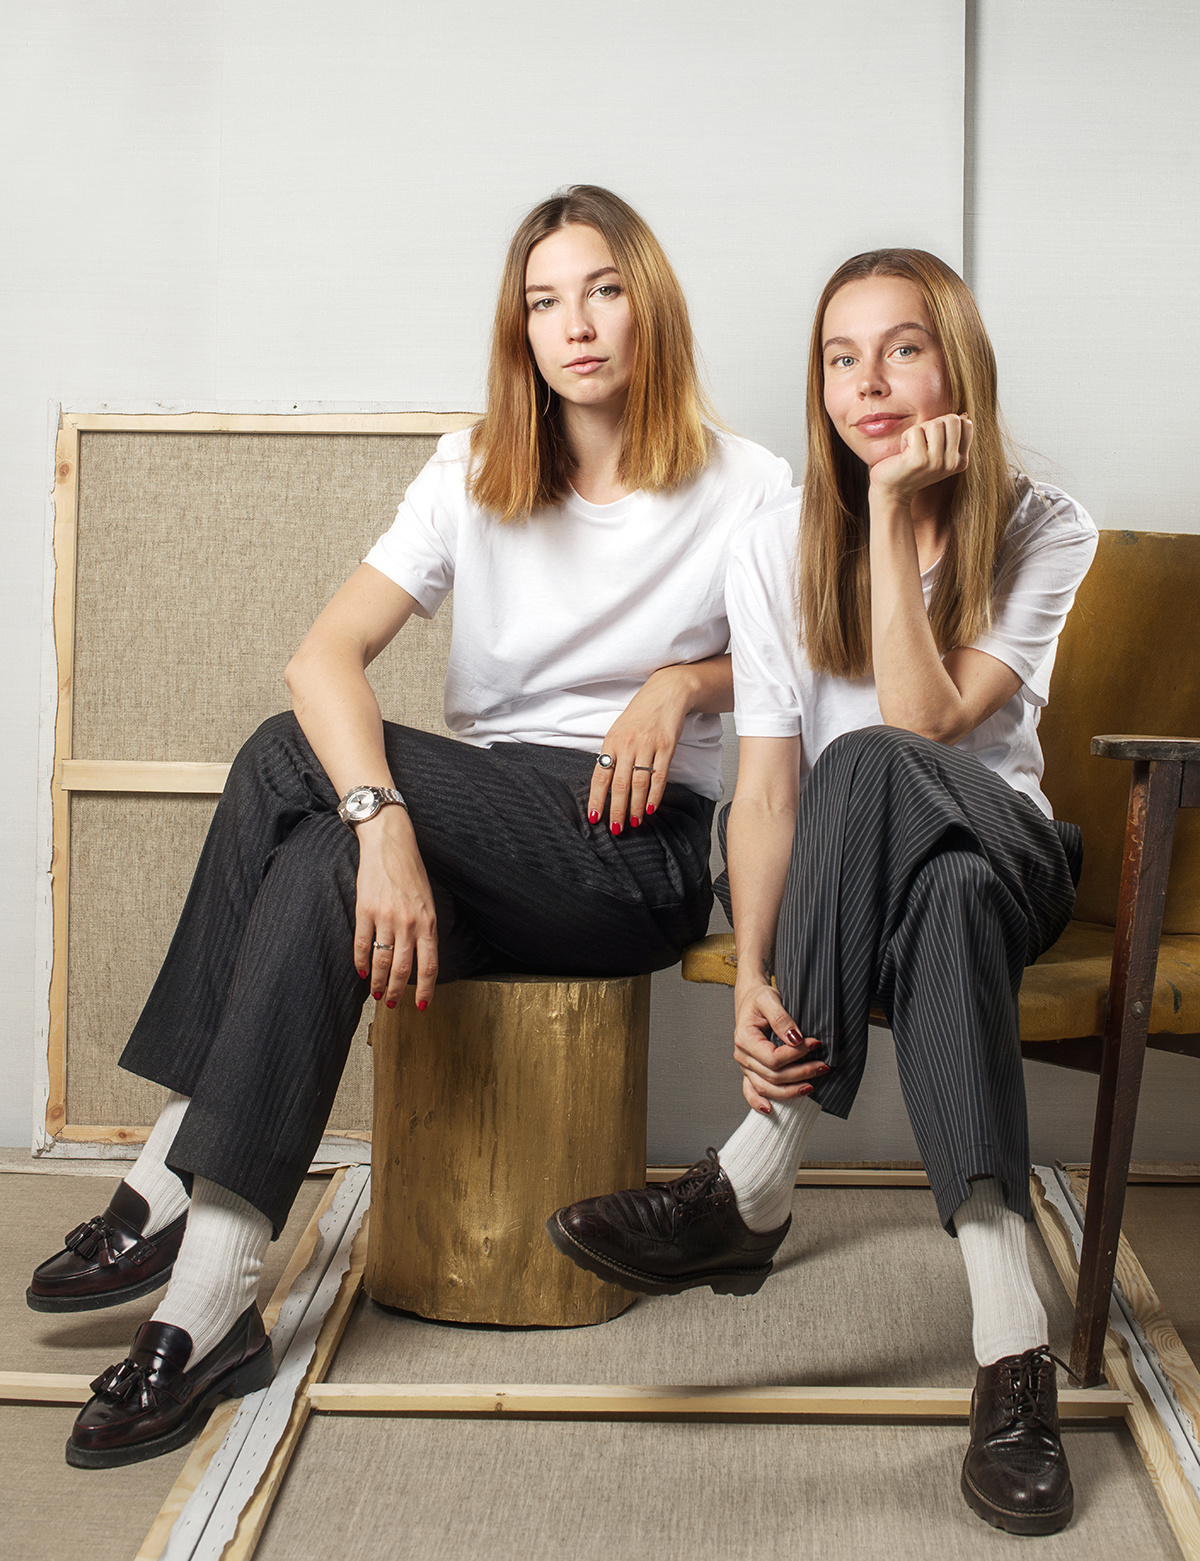 Tatiana Odintsova và Anna Sysoeva đến từ ArchBlack là 2 nhà thiết kế nội thất của dự án cải tạo hợp nhất 2 căn hộ nhỏ thành một căn hộ duy nhất diện tích 95,5m².